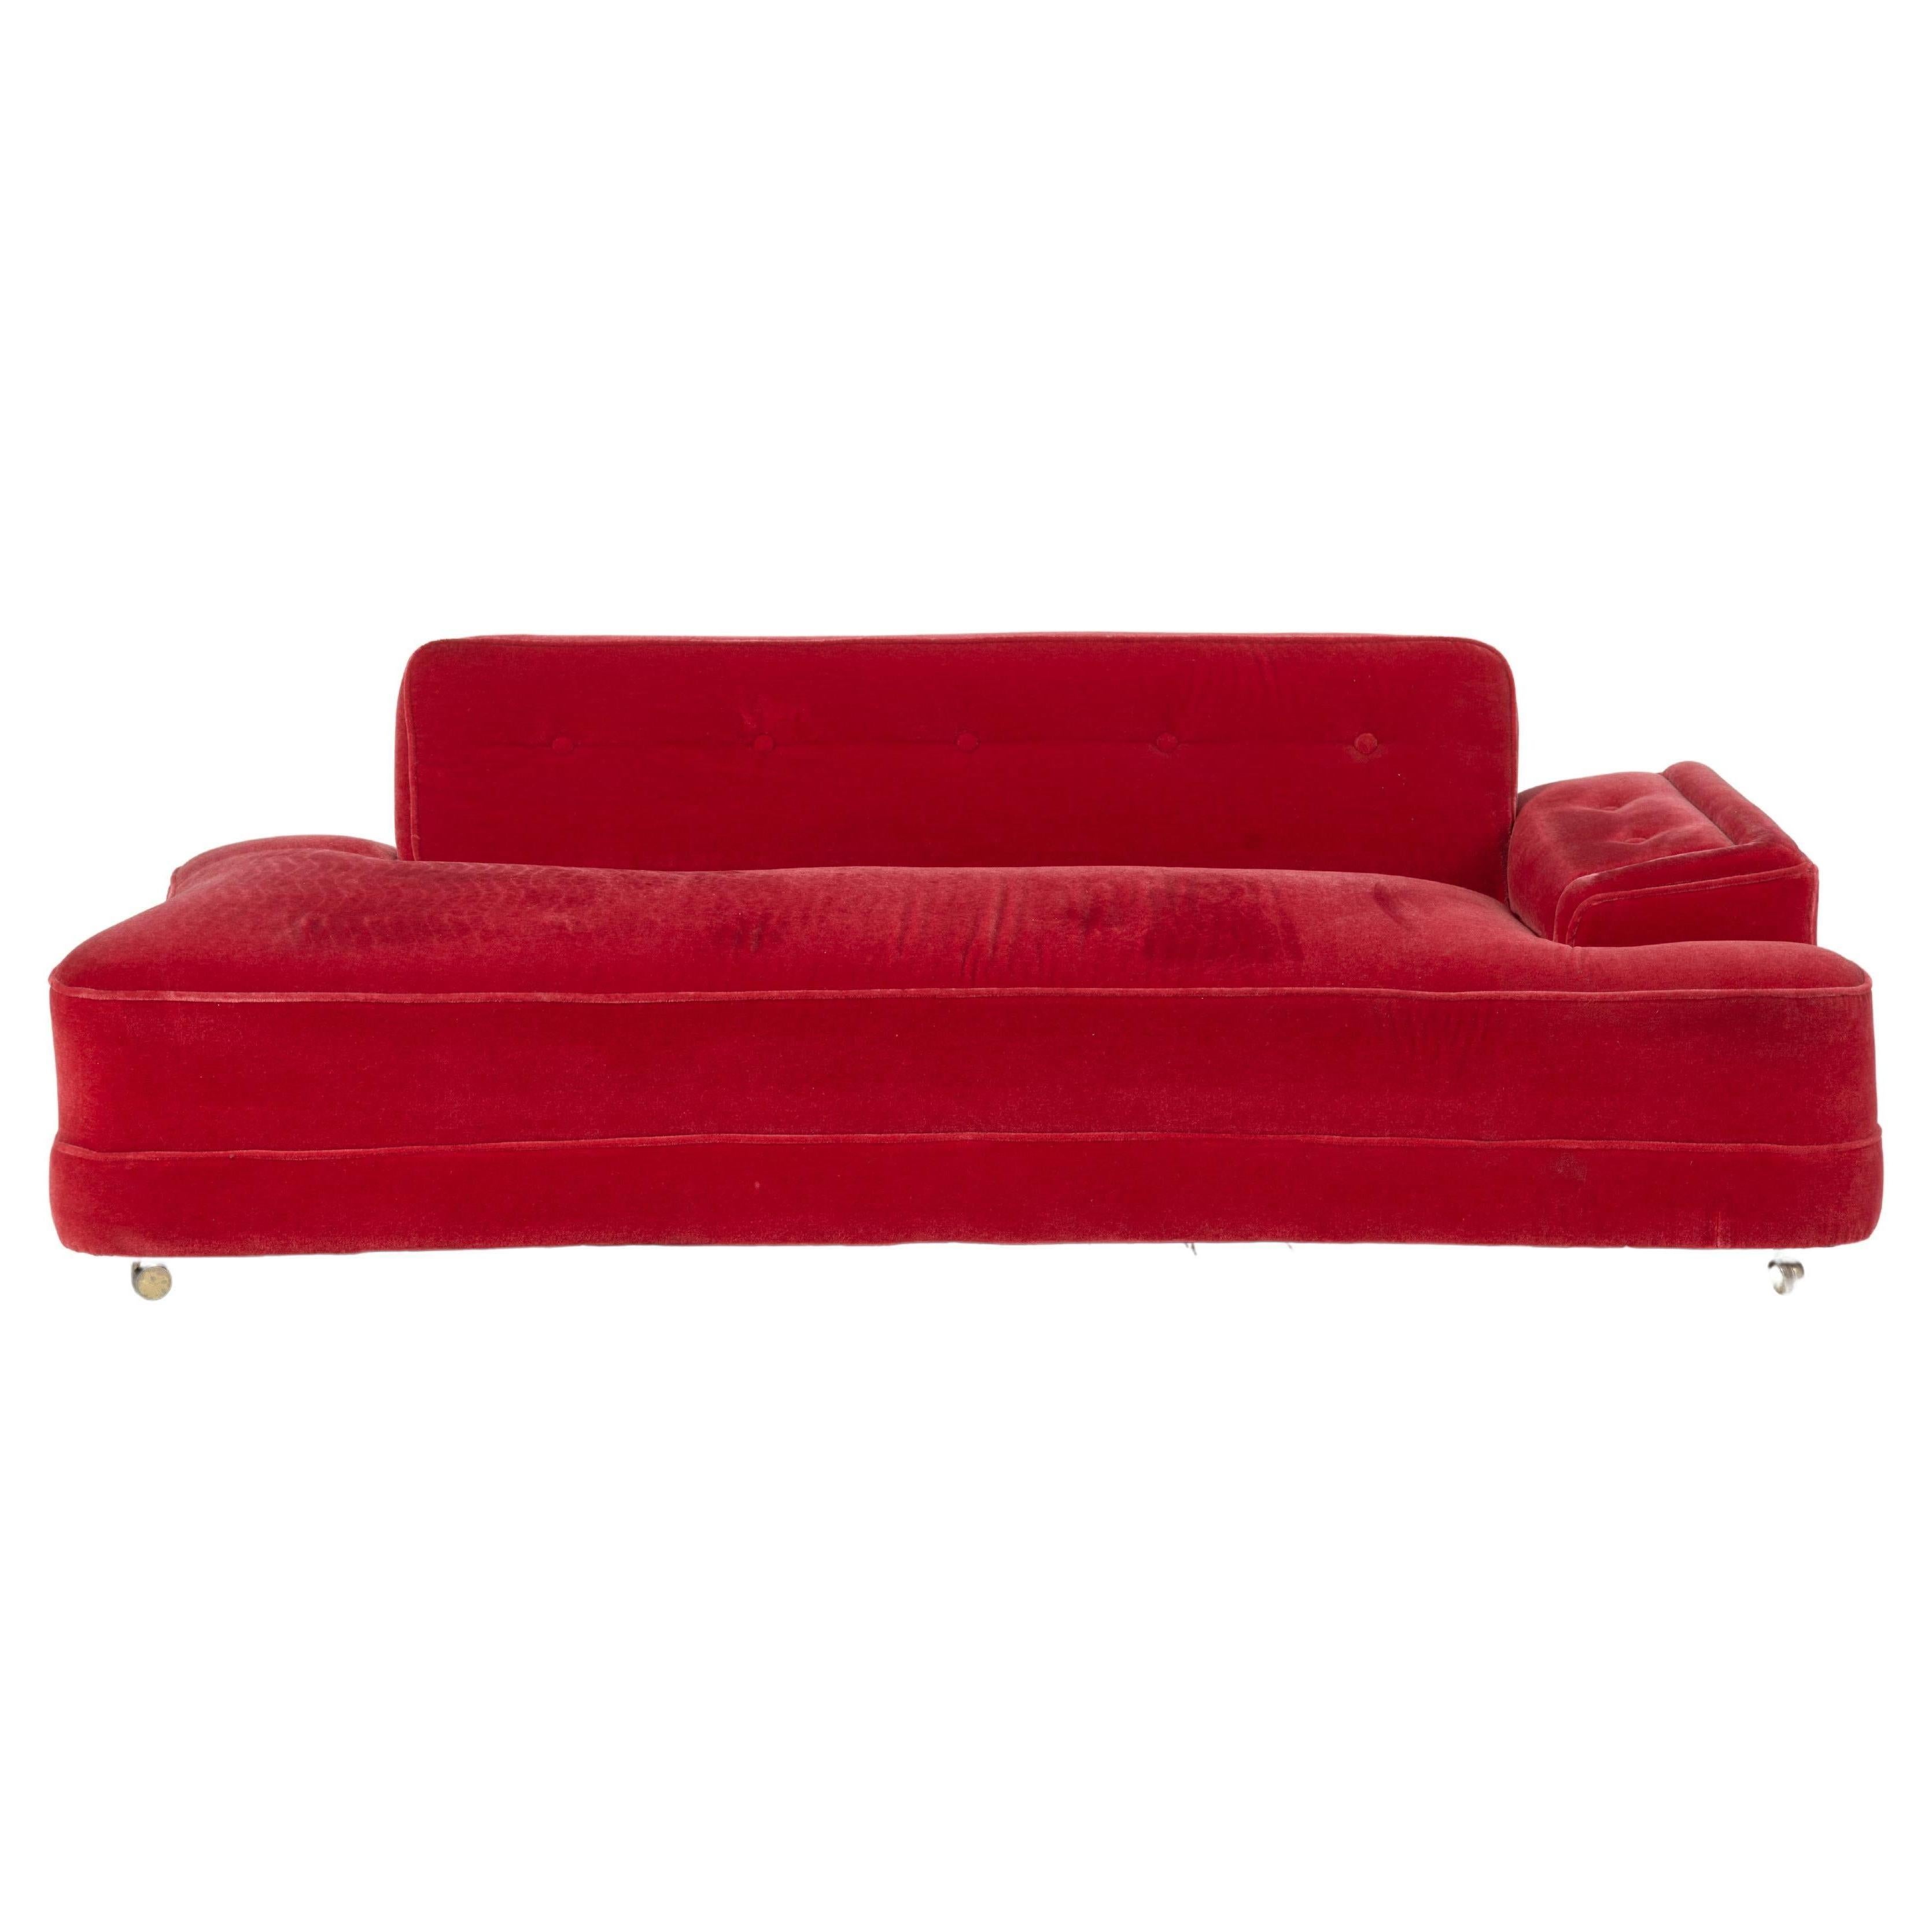 Rotes Mohair-Sofa und Cabrio-Tagesbett, 1950er Jahre